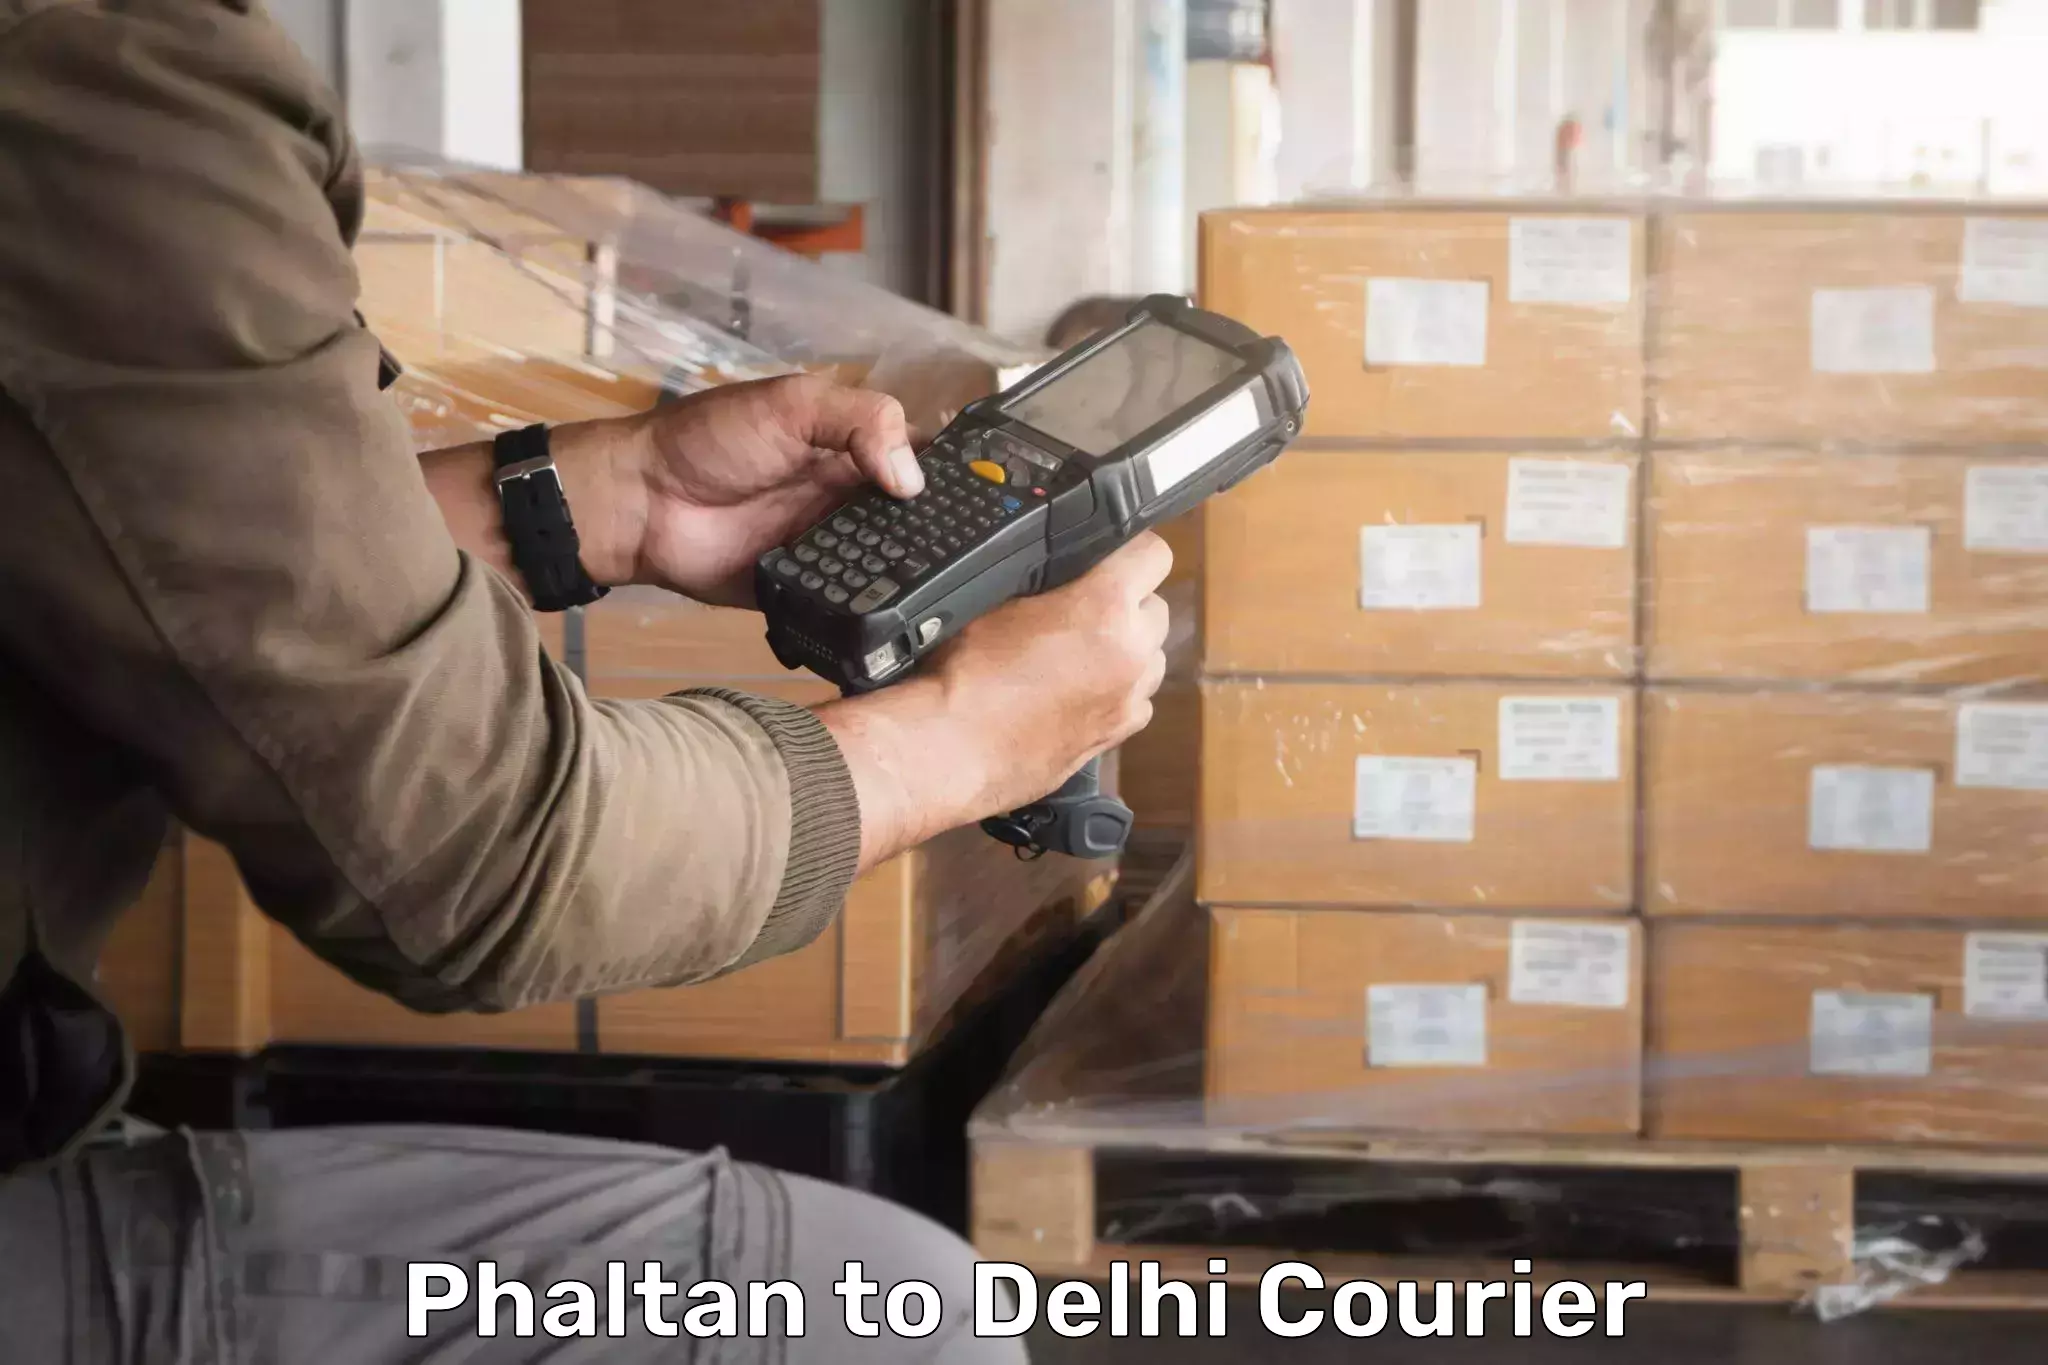 High-speed parcel service Phaltan to Ashok Vihar